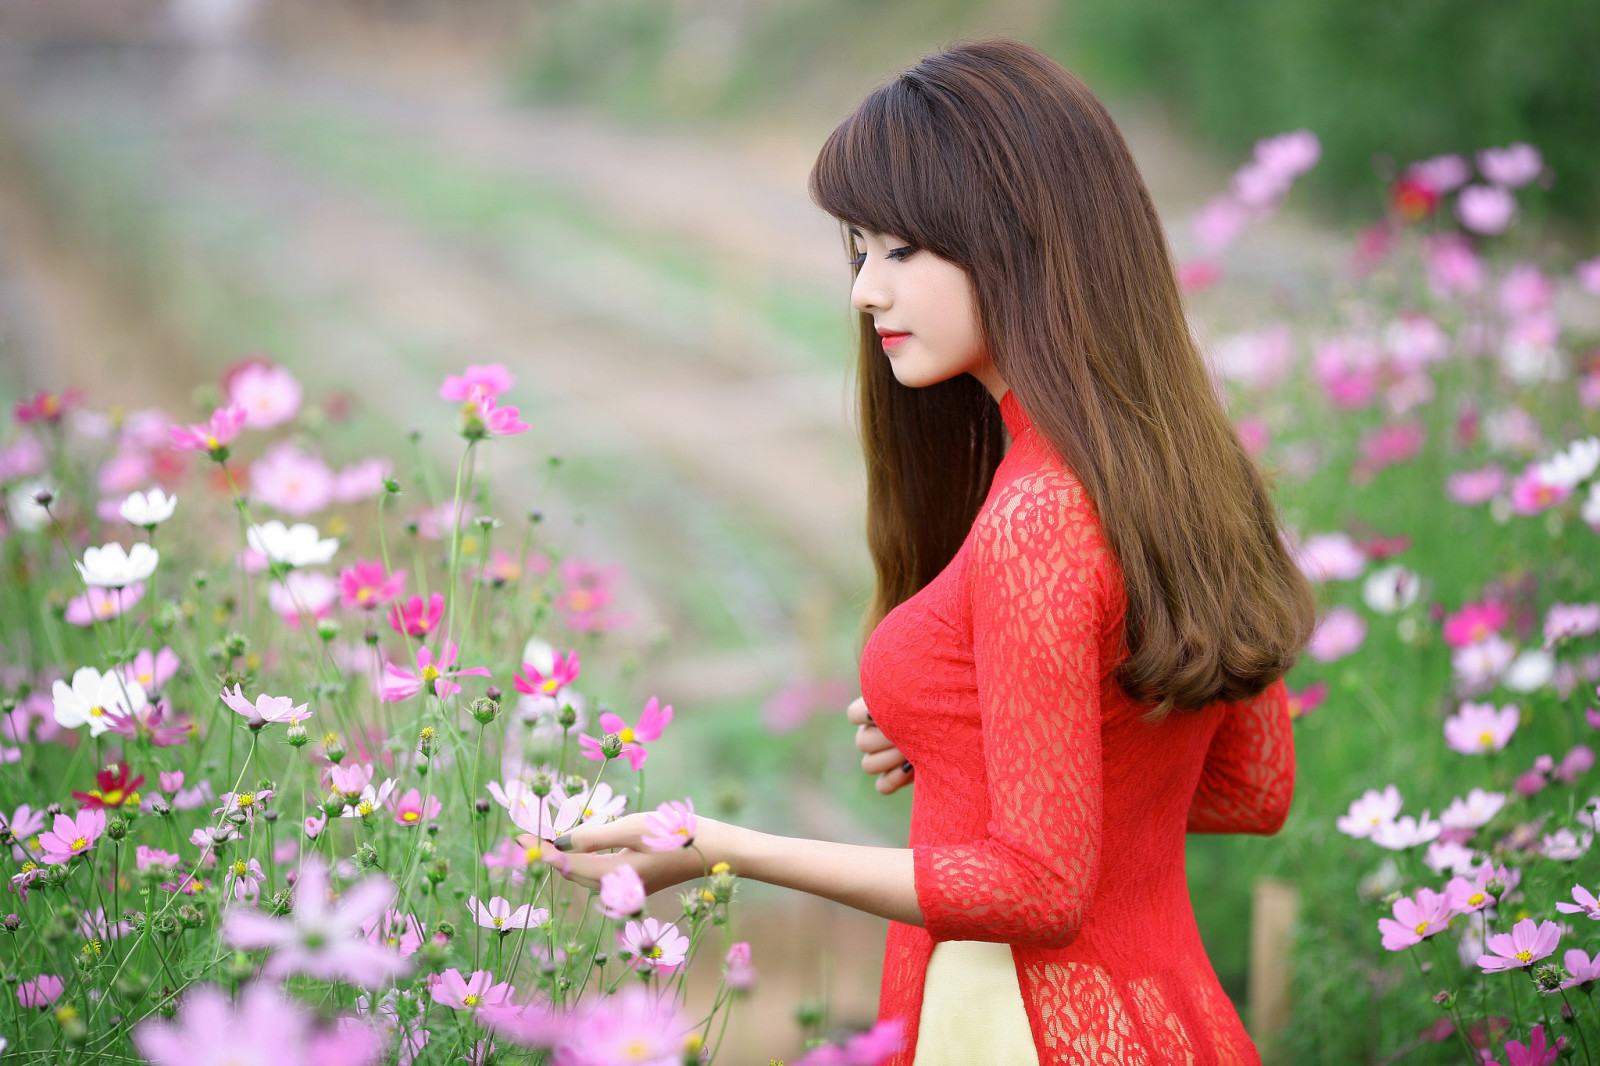 女孩, 手, 花卉, 头发, 嘴唇, 连衣裙, 红色礼服